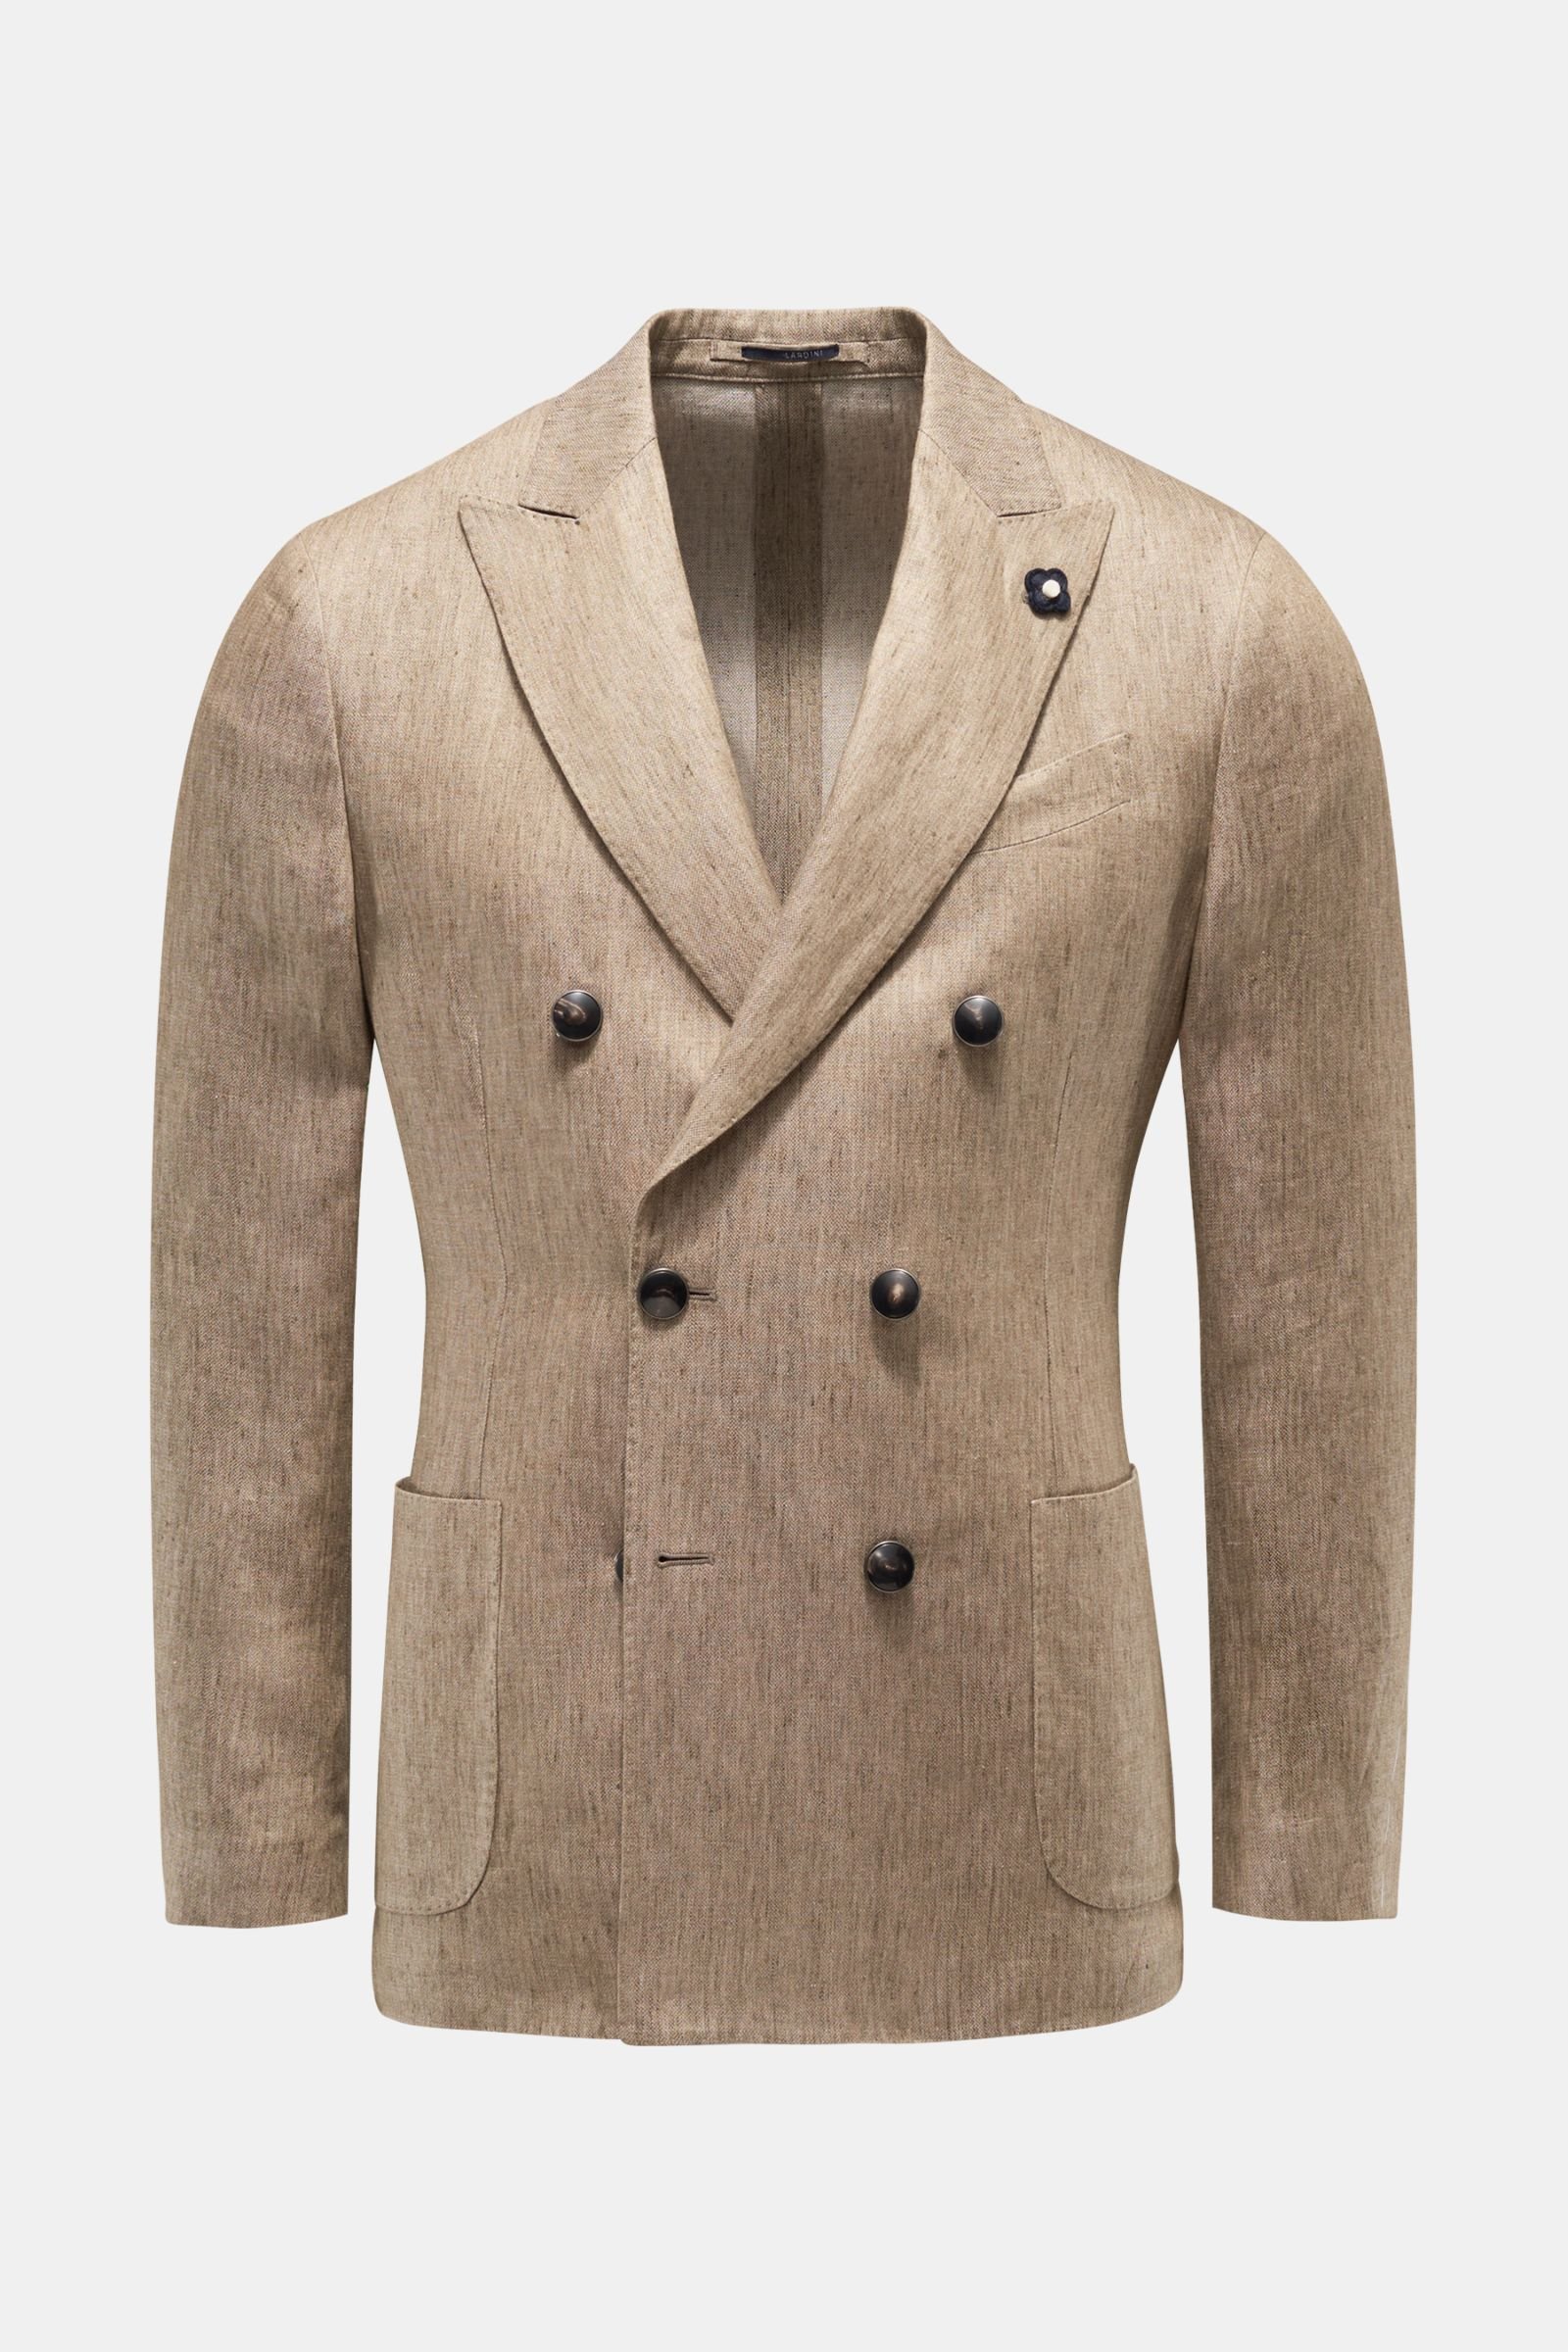 Linen jacket grey-brown